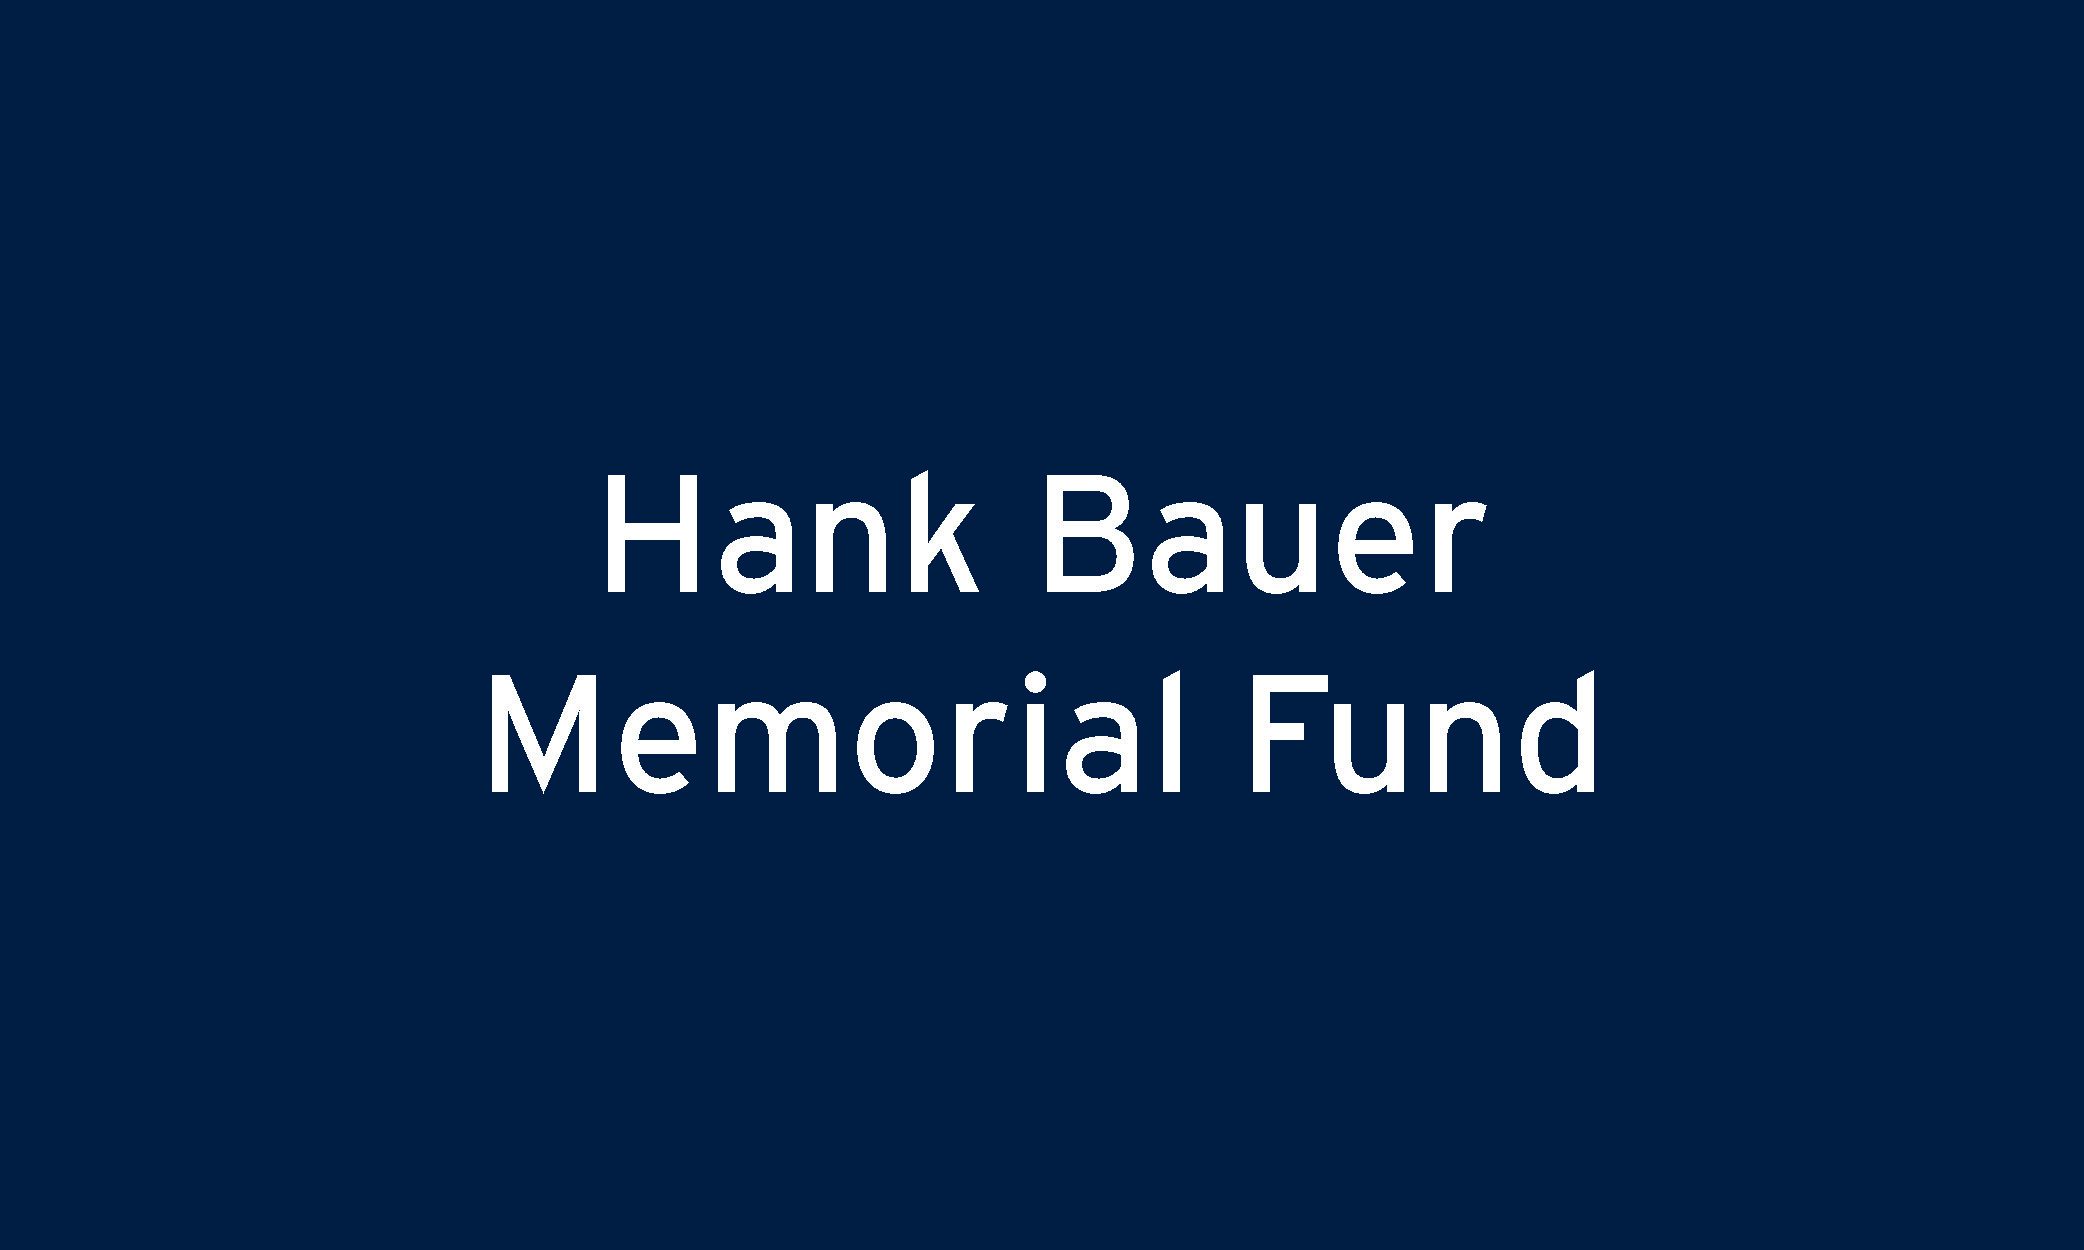 Hank Bauer Memorial Fund